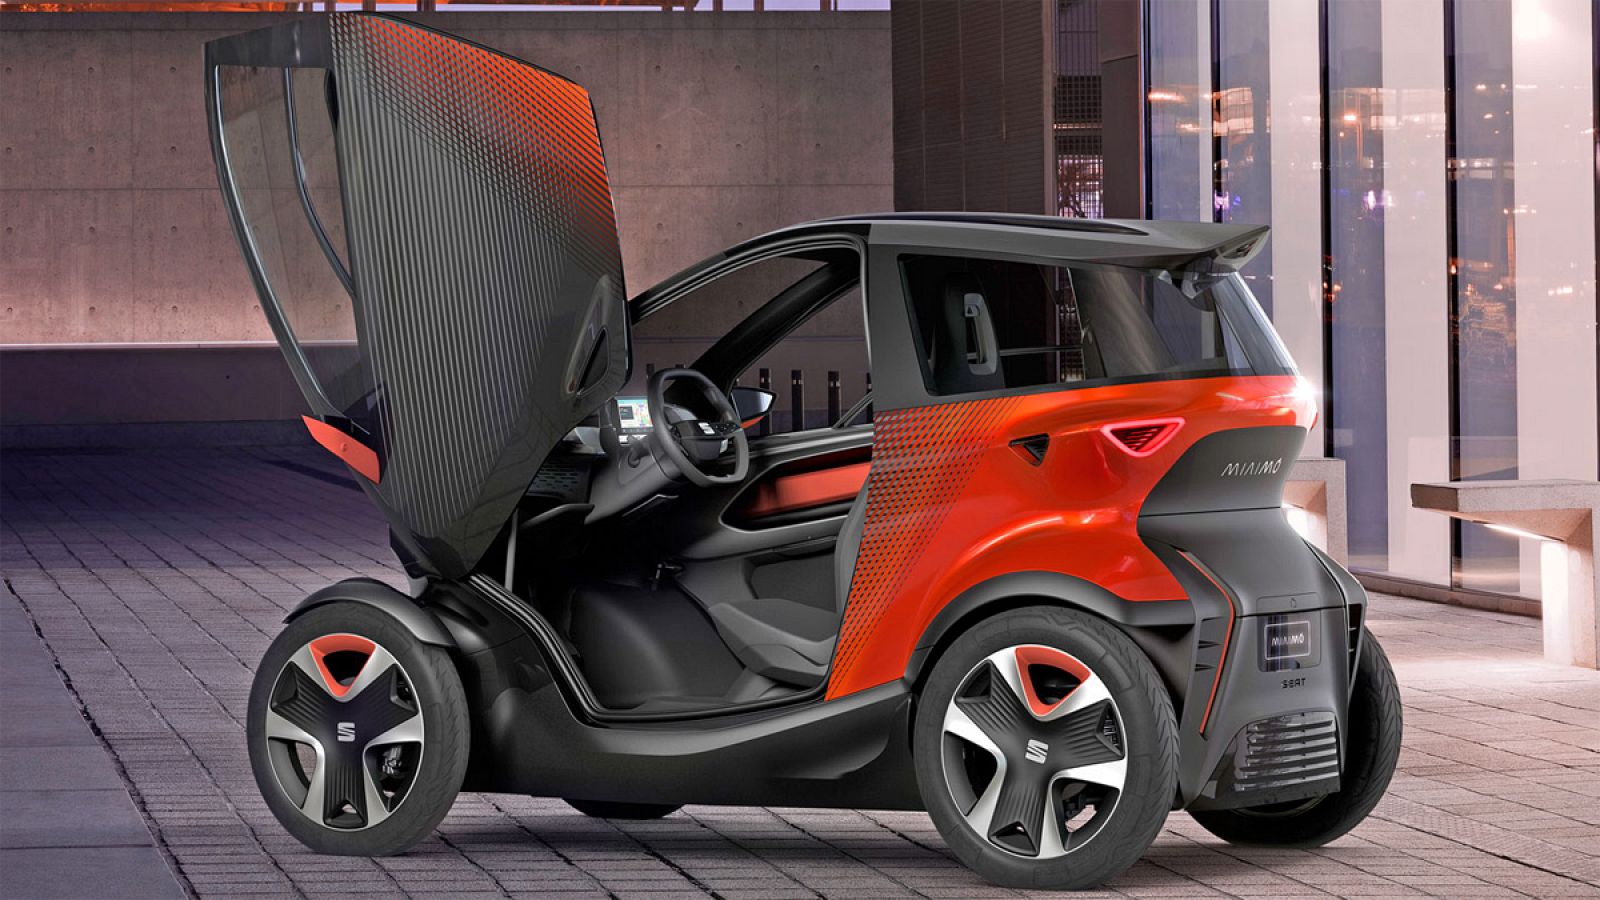 Imagen de Minimó, el prototipo de vehículo eléctrico urbano presentado por Seat.